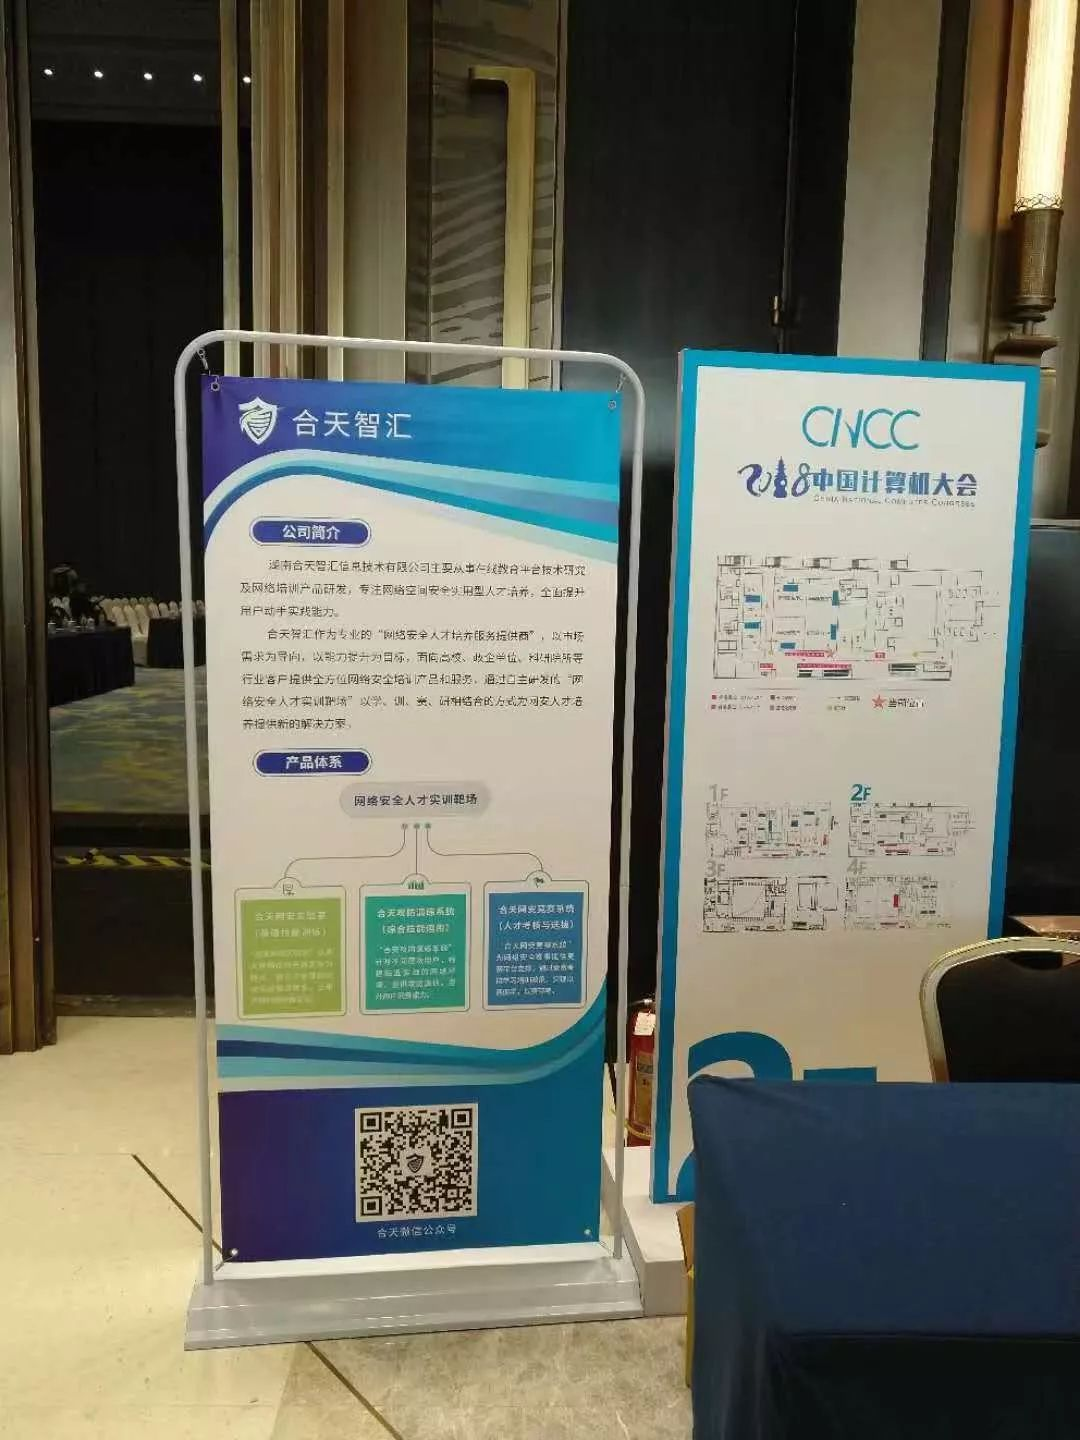 合天智汇精彩亮相2018中国计算机大会（CNCC2018）-第4张图片-网盾网络安全培训